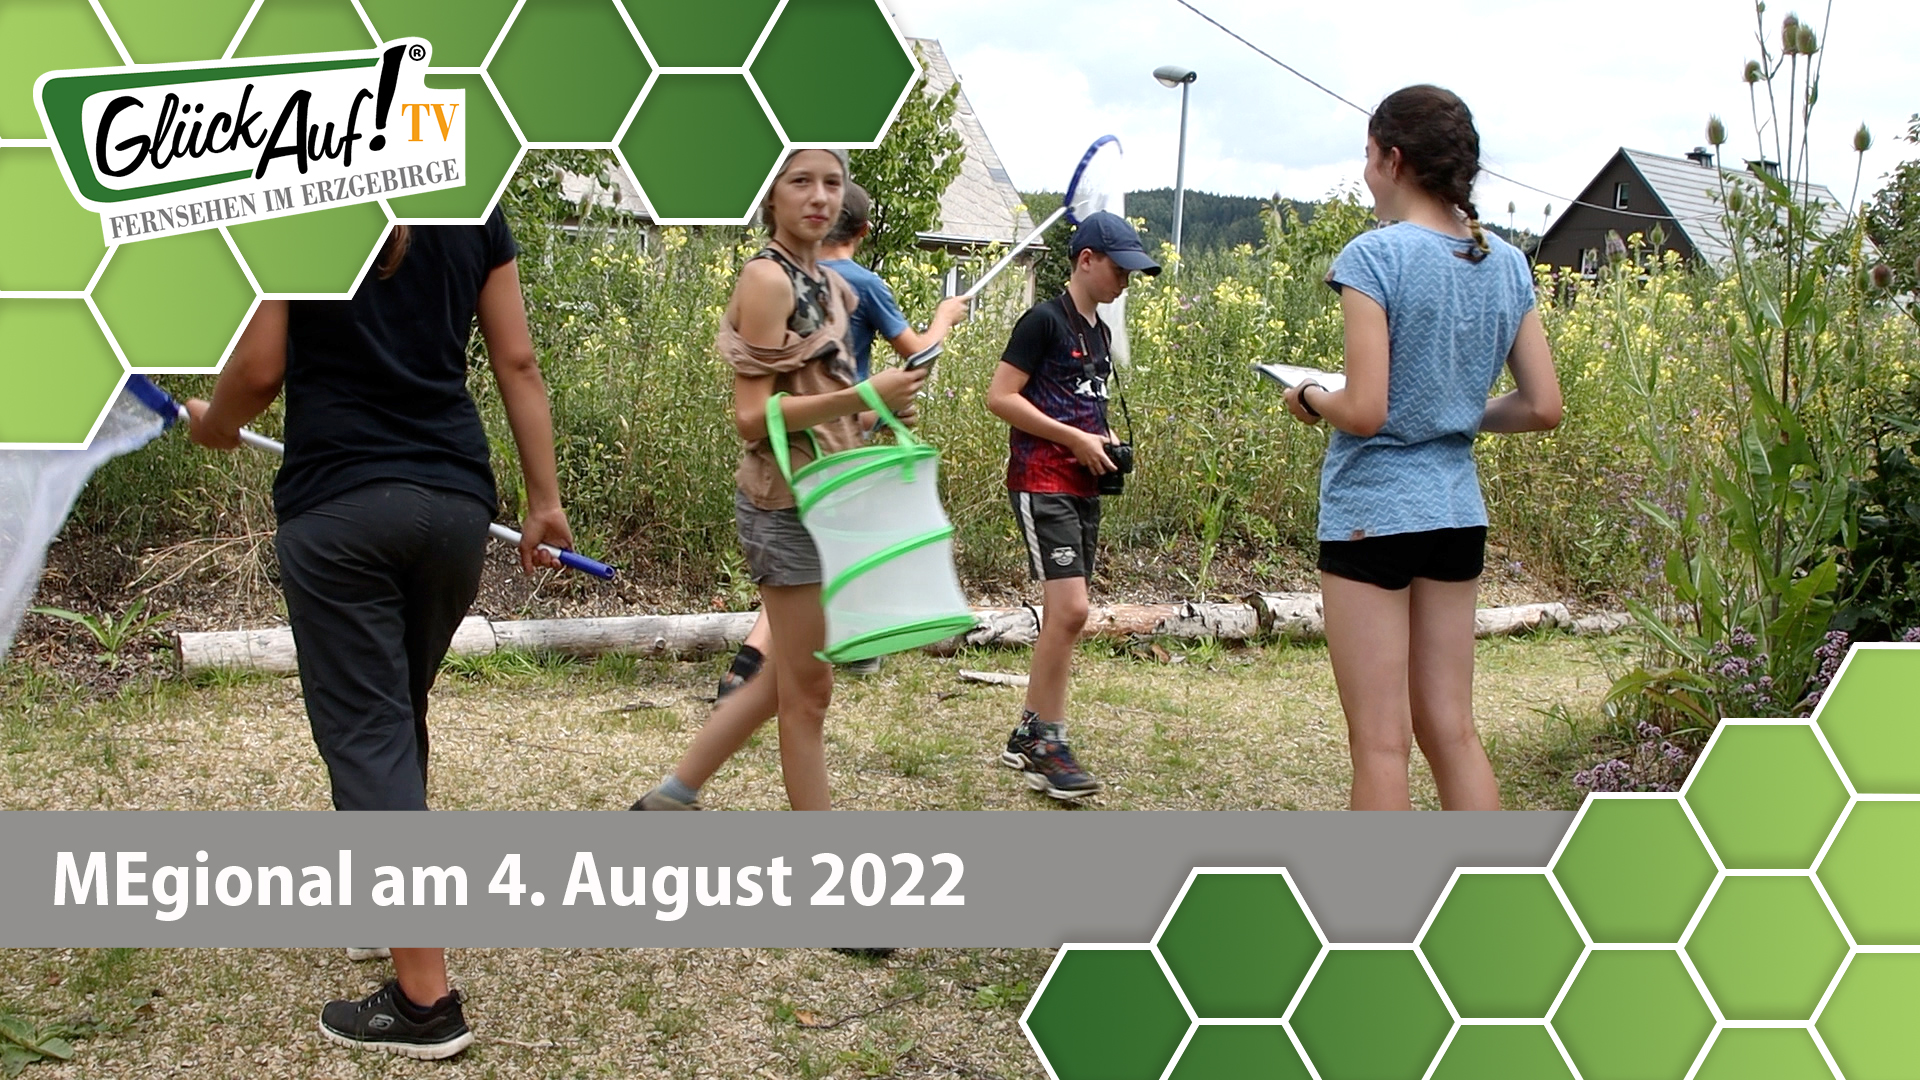 MEgional am 4. August 2022 - mit einem Schmetterlingscamp in Rübenau